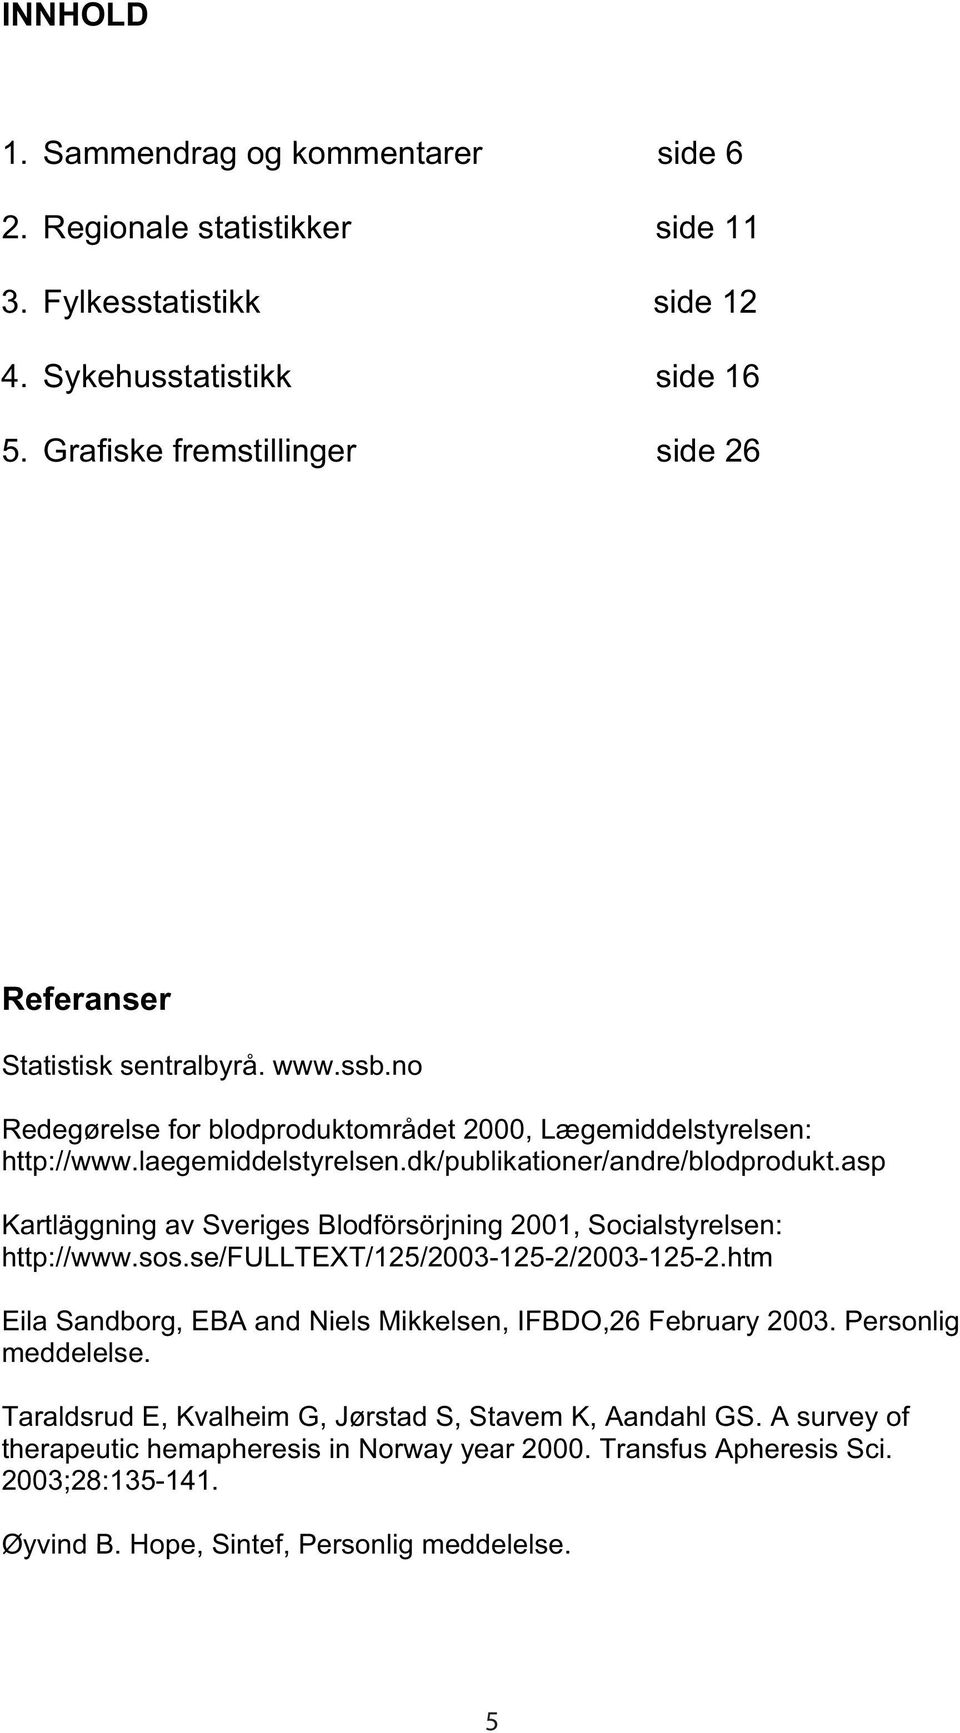 dk/publikationer/andre/blodprodukt.asp Kartläggning av Sveriges Blodförsörjning 2001, Socialstyrelsen: http://www.sos.se/fulltext/125/2003-125-2/2003-125-2.